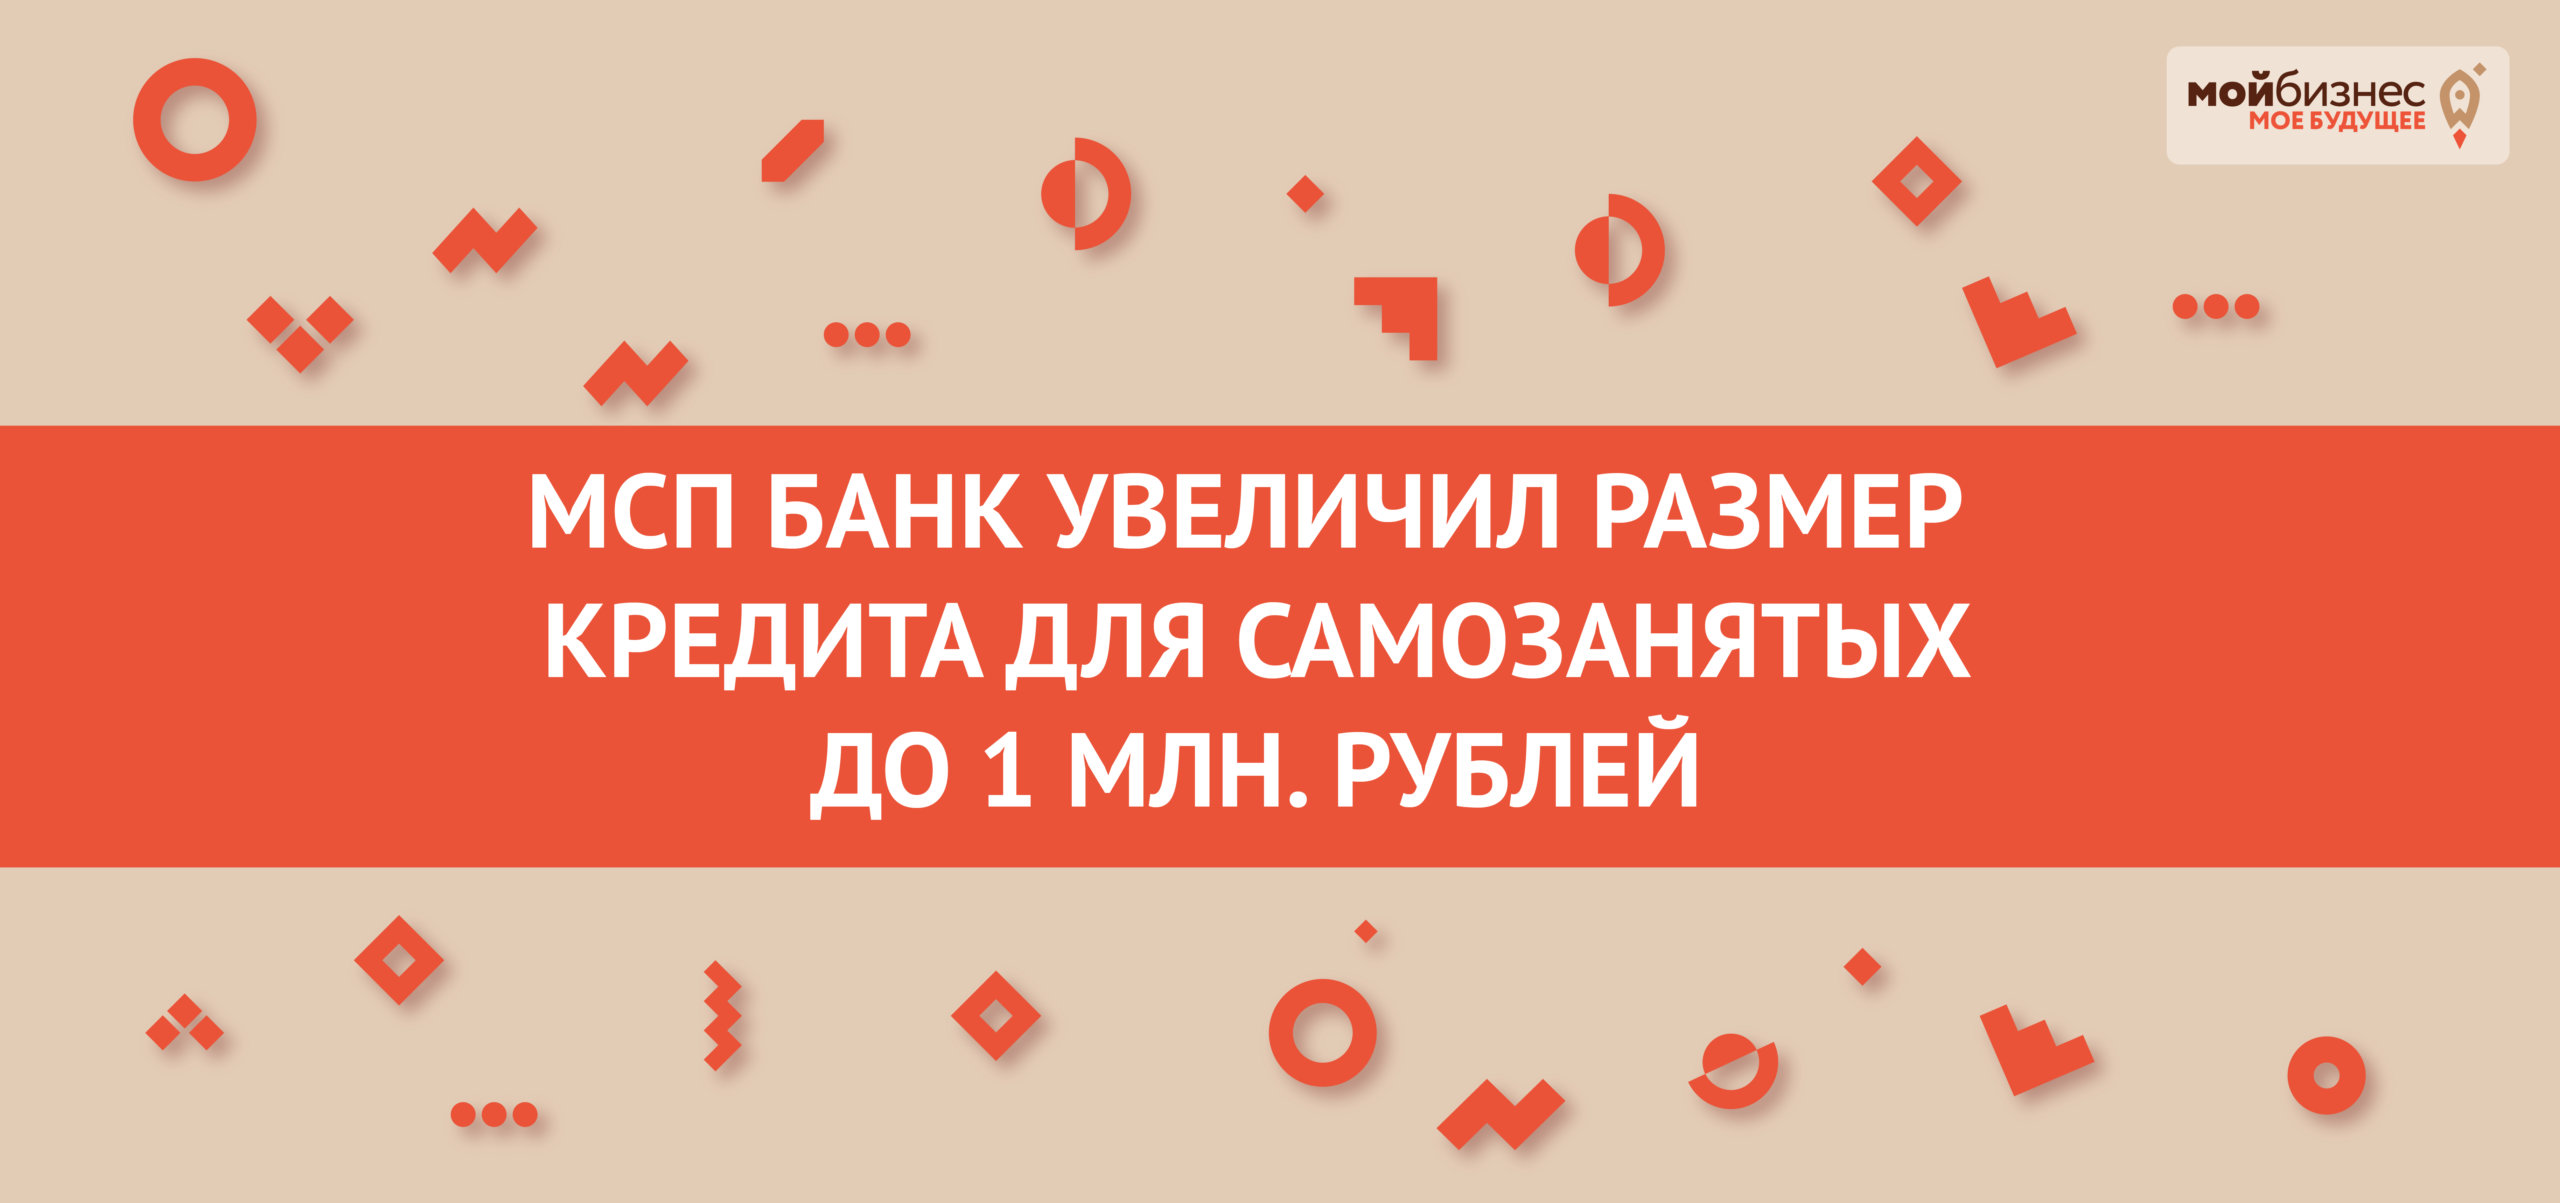 МСП Банк увеличил размер кредита для самозантяых граждан до1 млн. рублей.